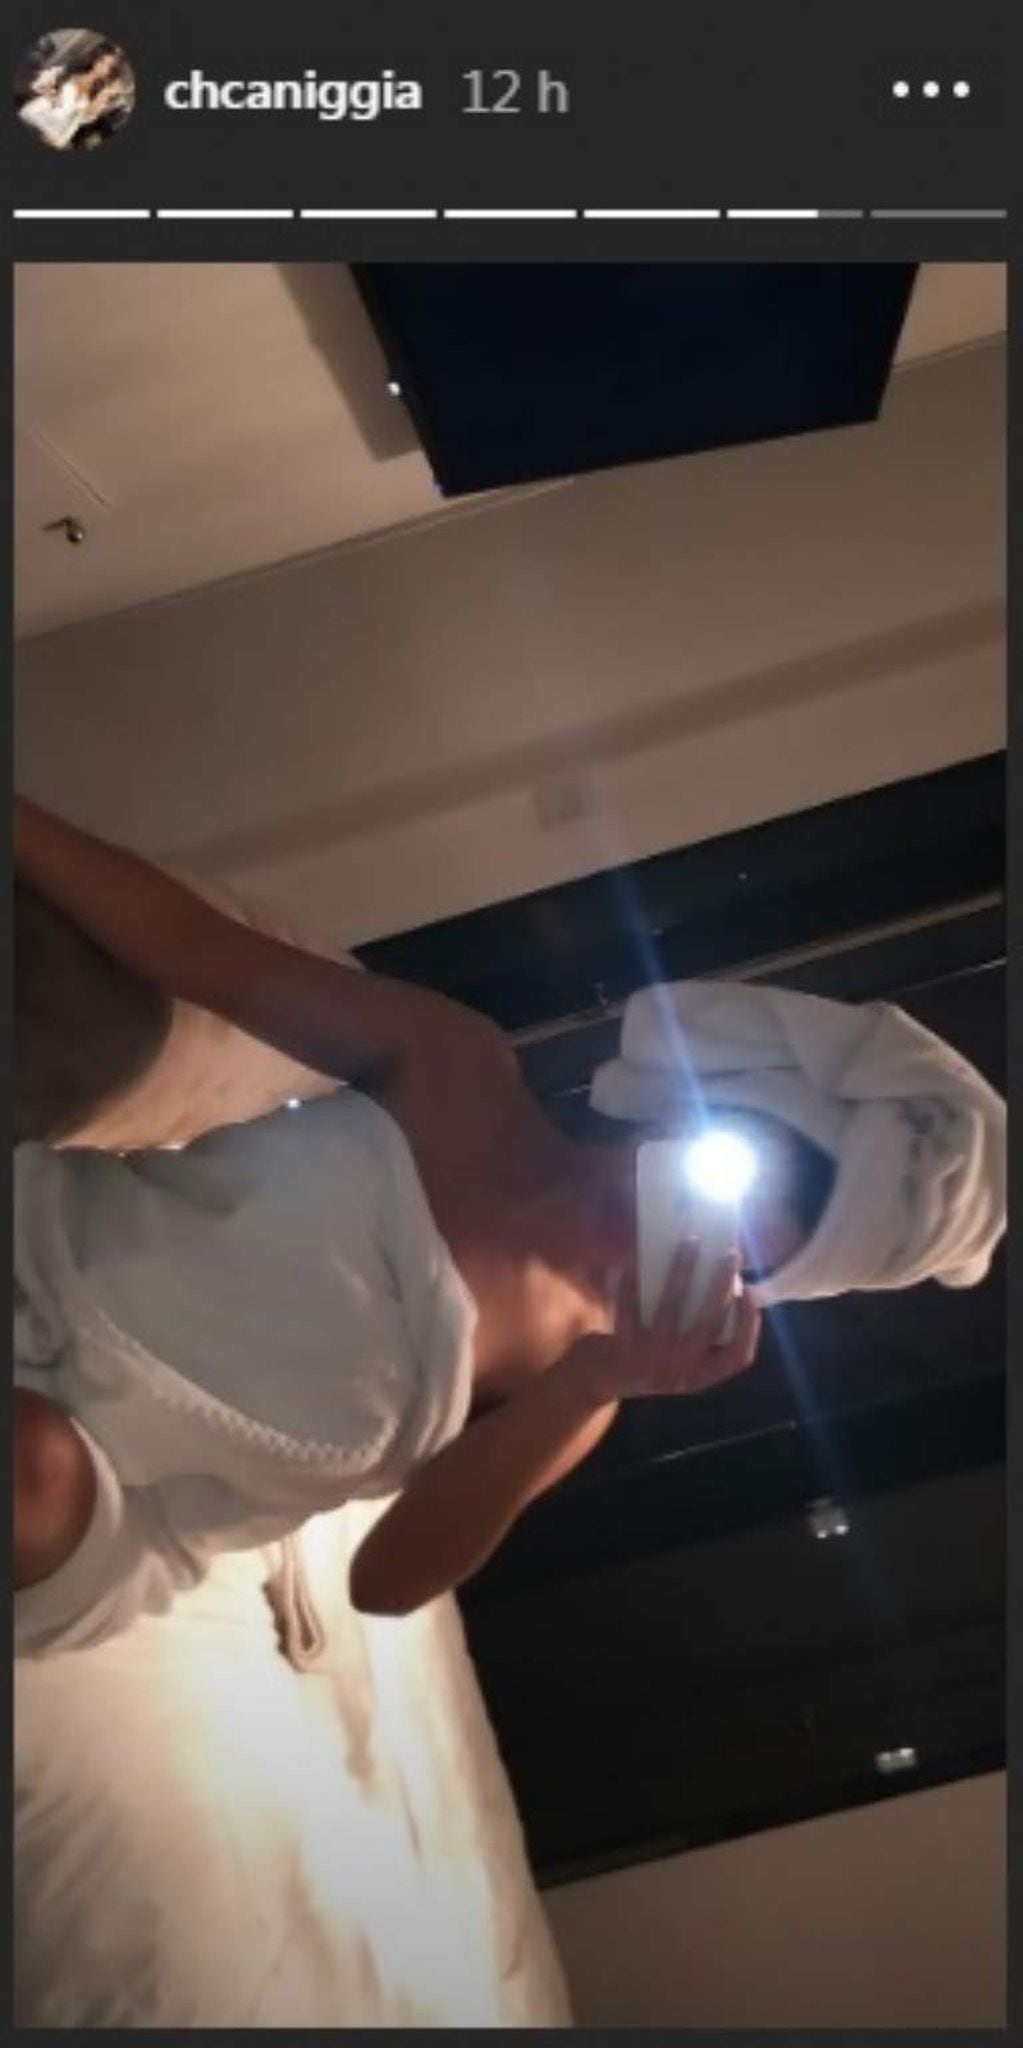 Charlotte Caniggia revolucinó Instagram con una foto recién salida de la ducha (Foto: Instagram/ @chcanicggia)